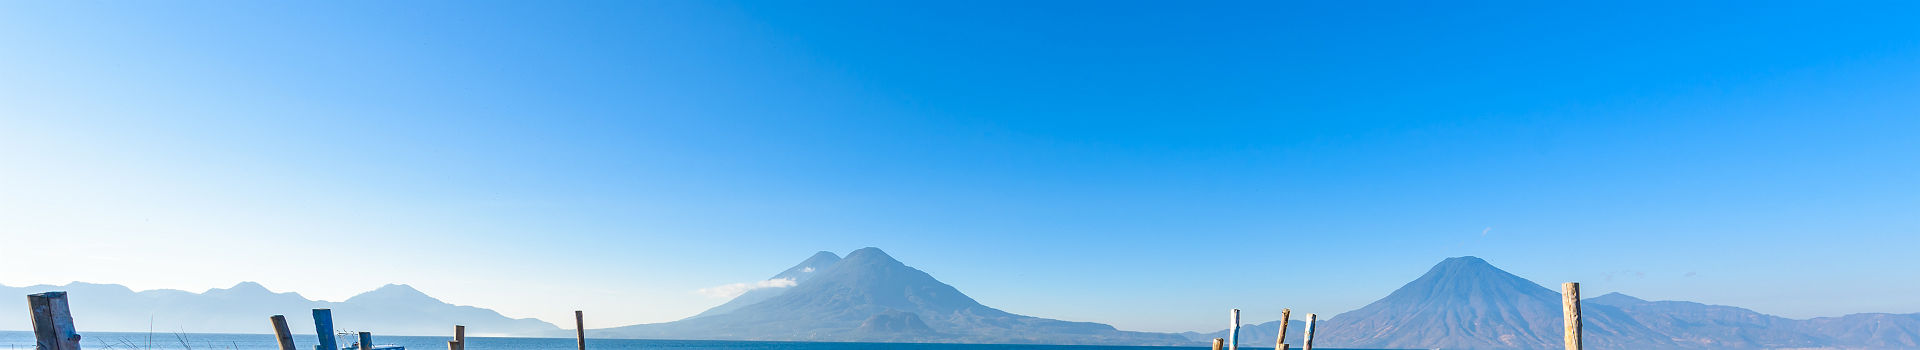 Guatemala - Vue sur le lac Atitlan et le volcan Toliman depuis un quai de bateaux